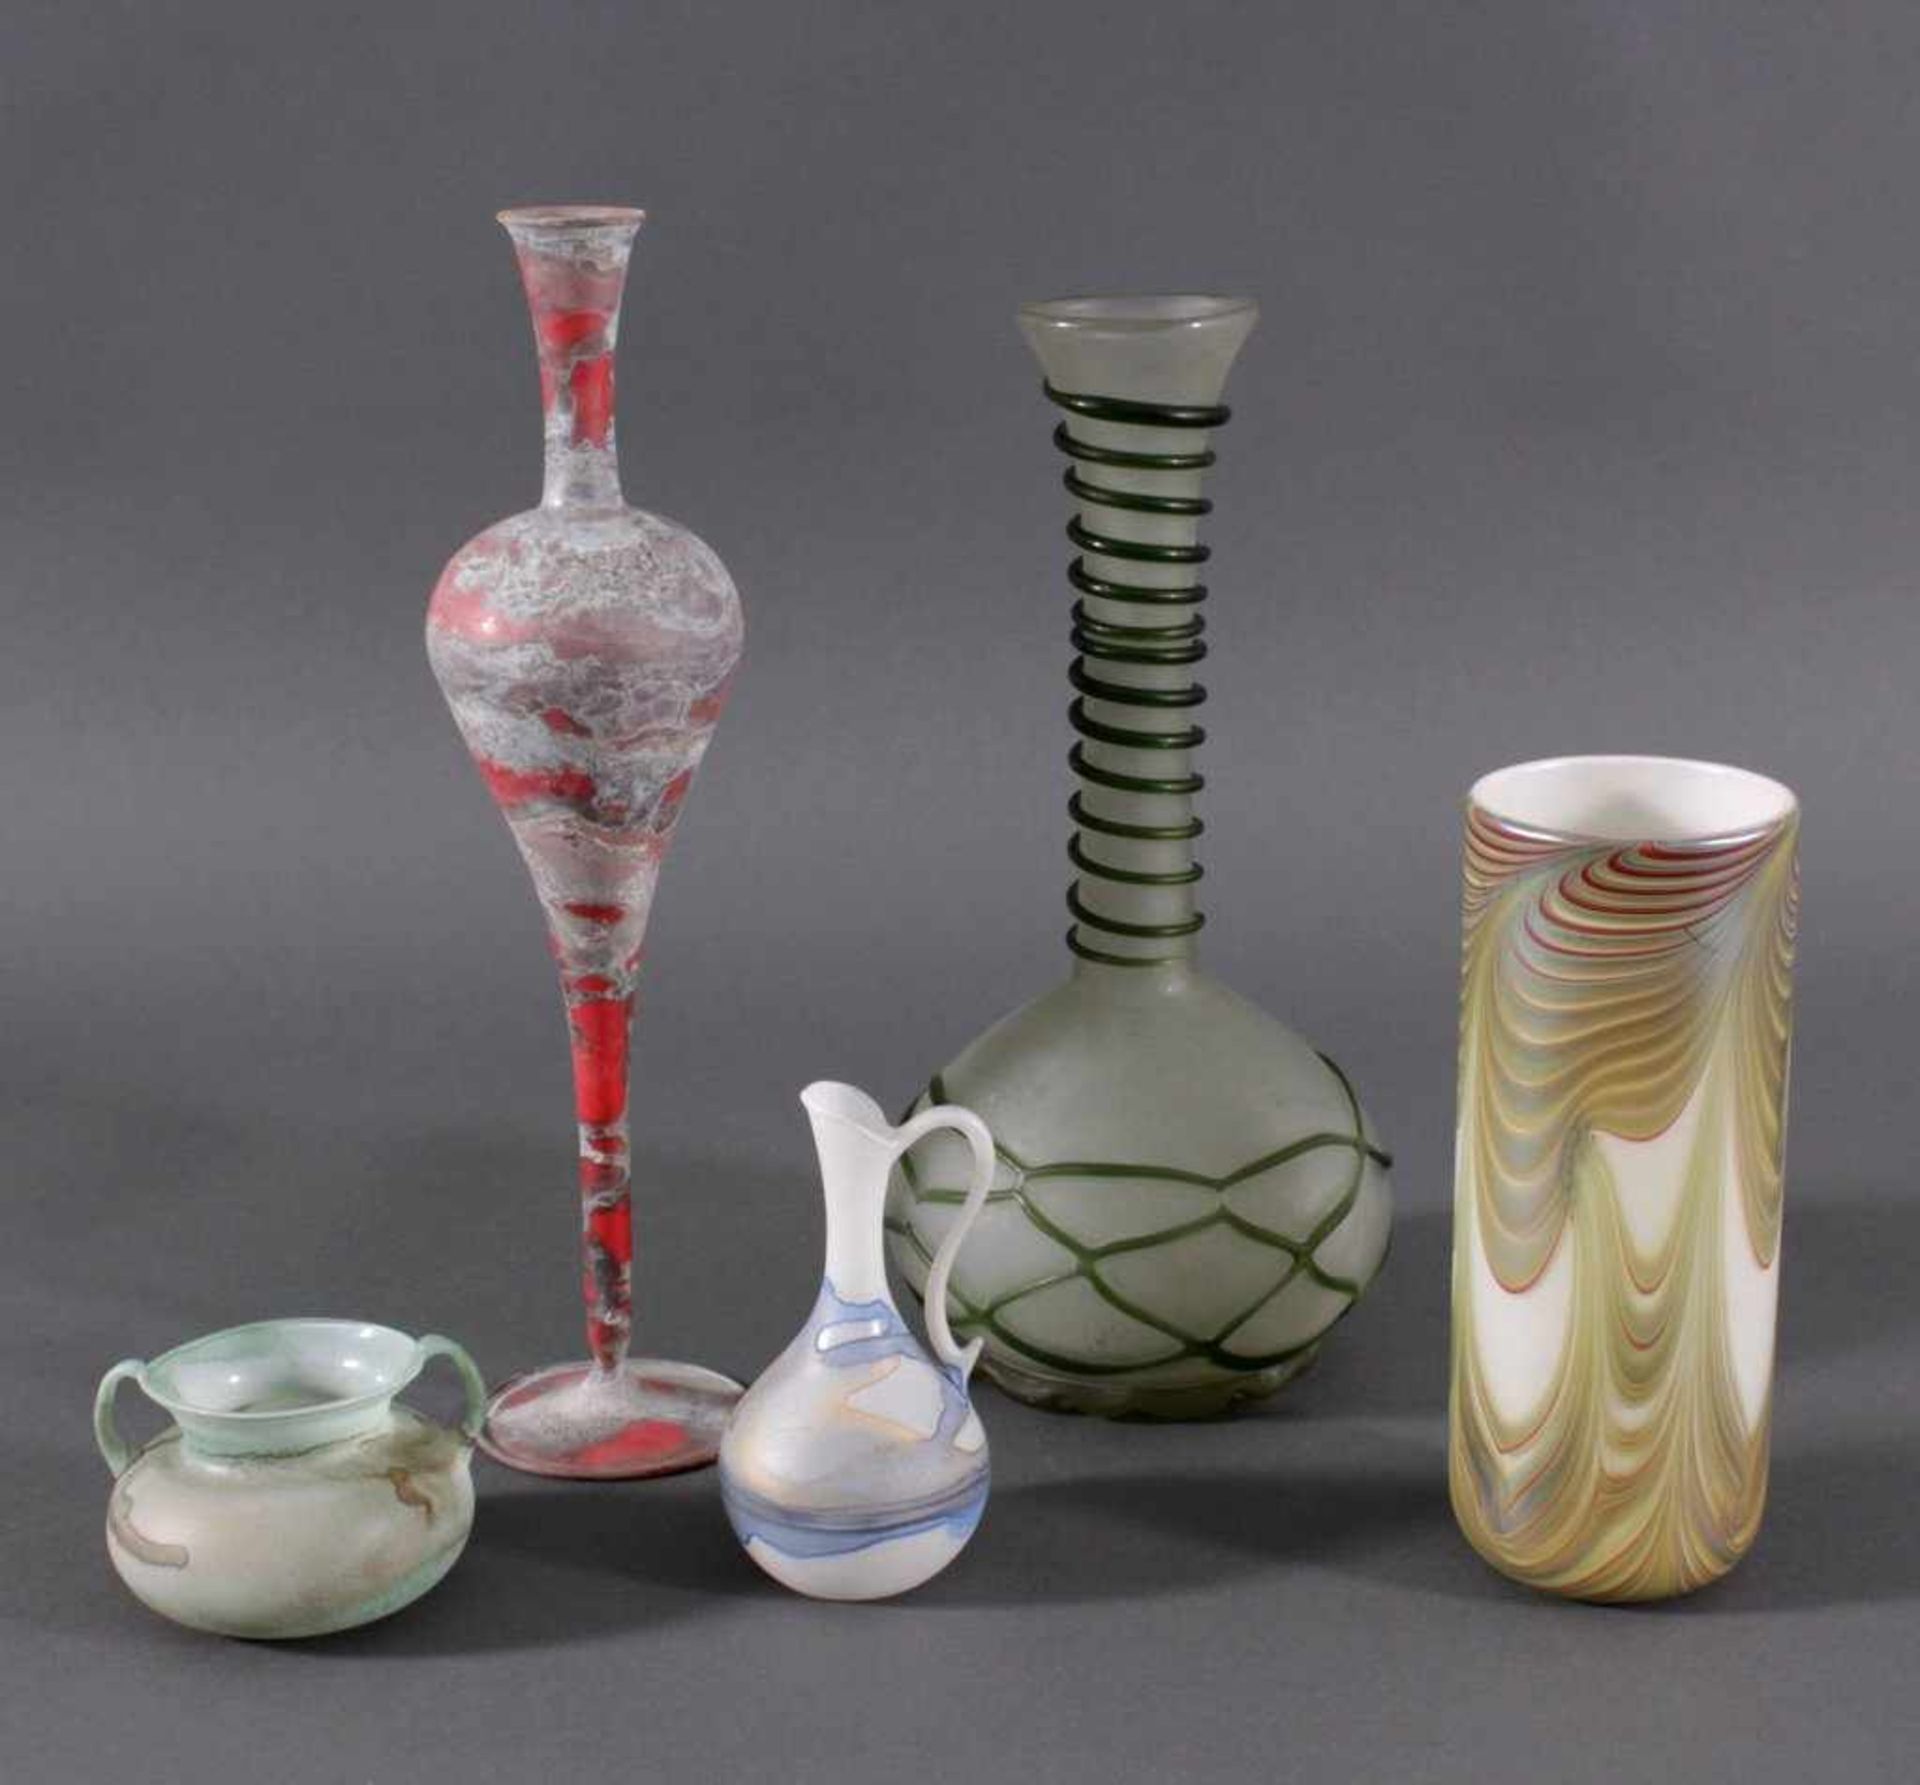 Lot Künstler Gläser1x Große Vase Böhmen mit Glasspirale farbloses Glas,bauchiger Korpus mit langem